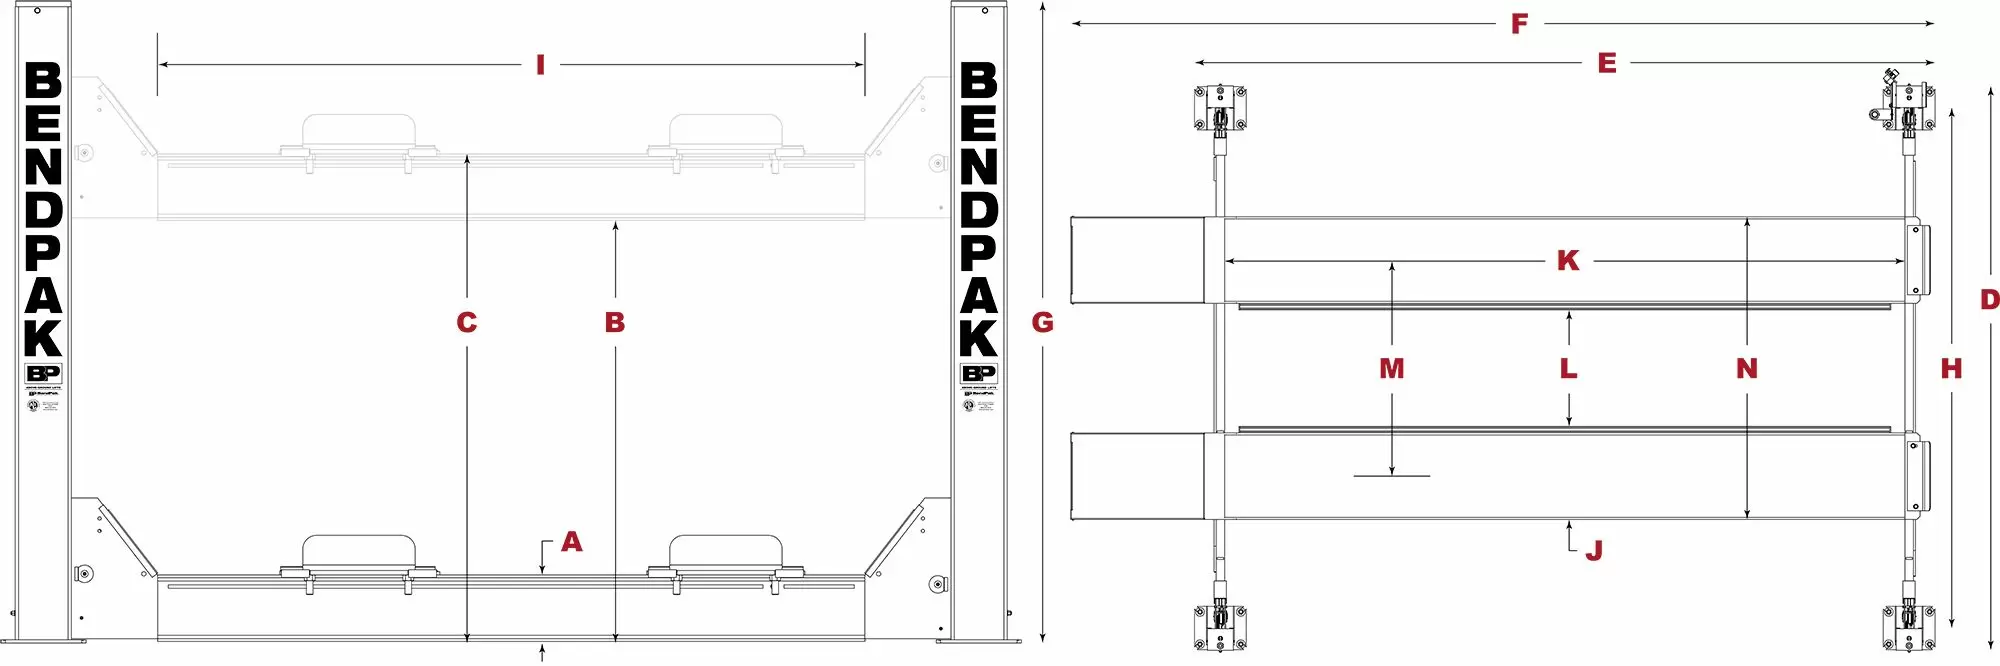 BendPak-Heavy-Duty-Four-Post-Lift-Specifications-Diagram_jpg-4.webp